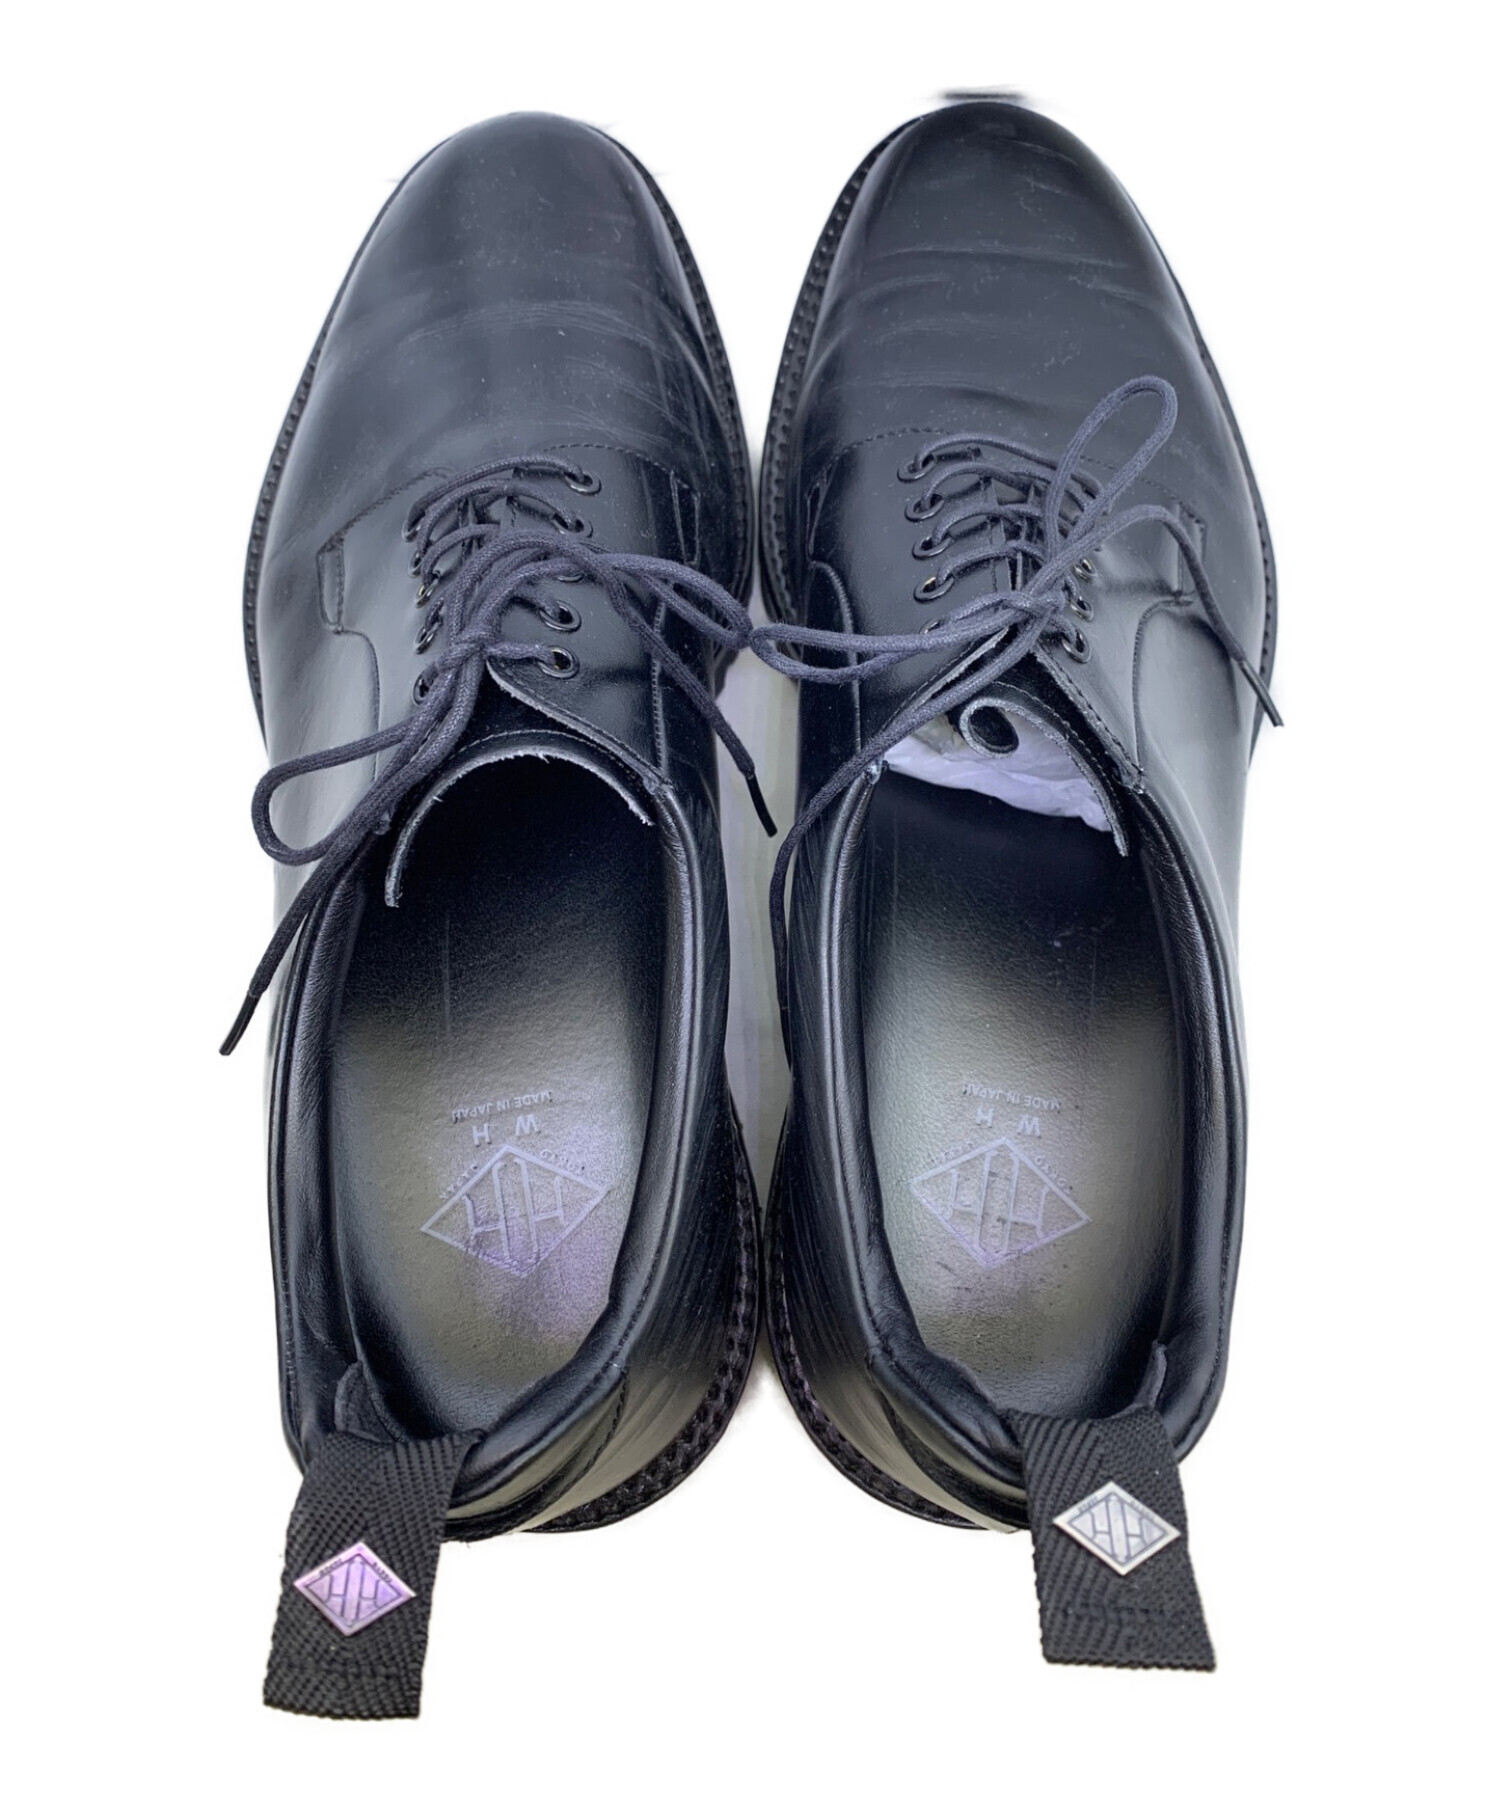 ダブルエイチ／WH シューズ ビジネスシューズ 靴 ビジネス メンズ 男性 男性用レザー 革 本革 ブラック 黒  WHS-0011 ダービーシューズ プレーントゥ Vibramソール